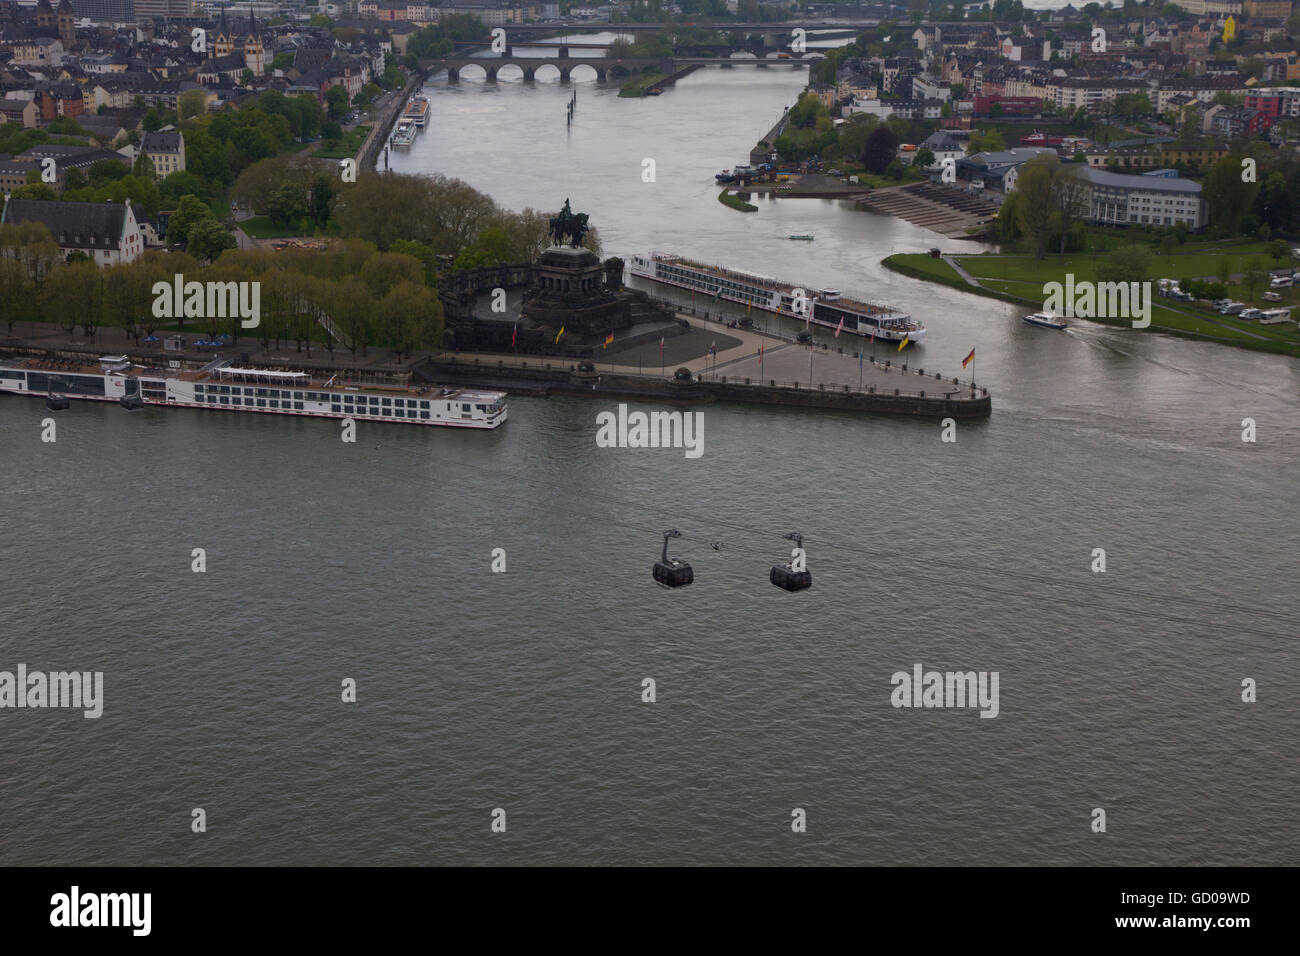 Koblenz liegt am Zusammenfluss von Rhein und Mosel Flüsse – die so genannte "Deutsches Eck". Stockfoto